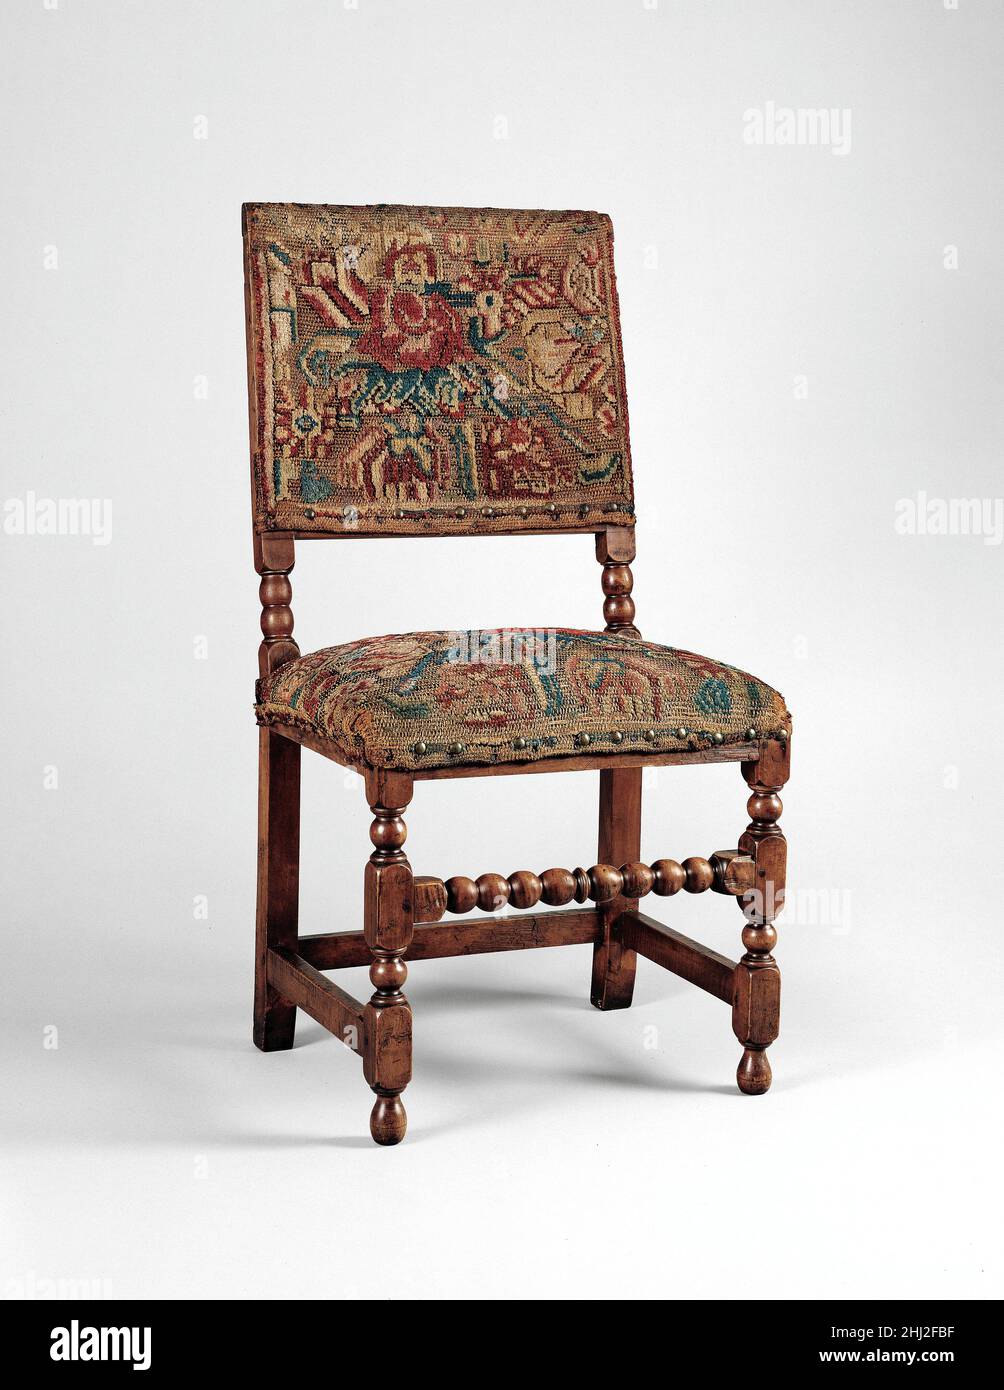 Silla TURQUÍA-TRABAJO 1680–1700 AMERICANA La gran rareza de esta silla se  encuentra en la lana original Turquía-trabajo que cubre su asiento y  espalda. “Turkeywork” se refiere a un tipo de tejido con